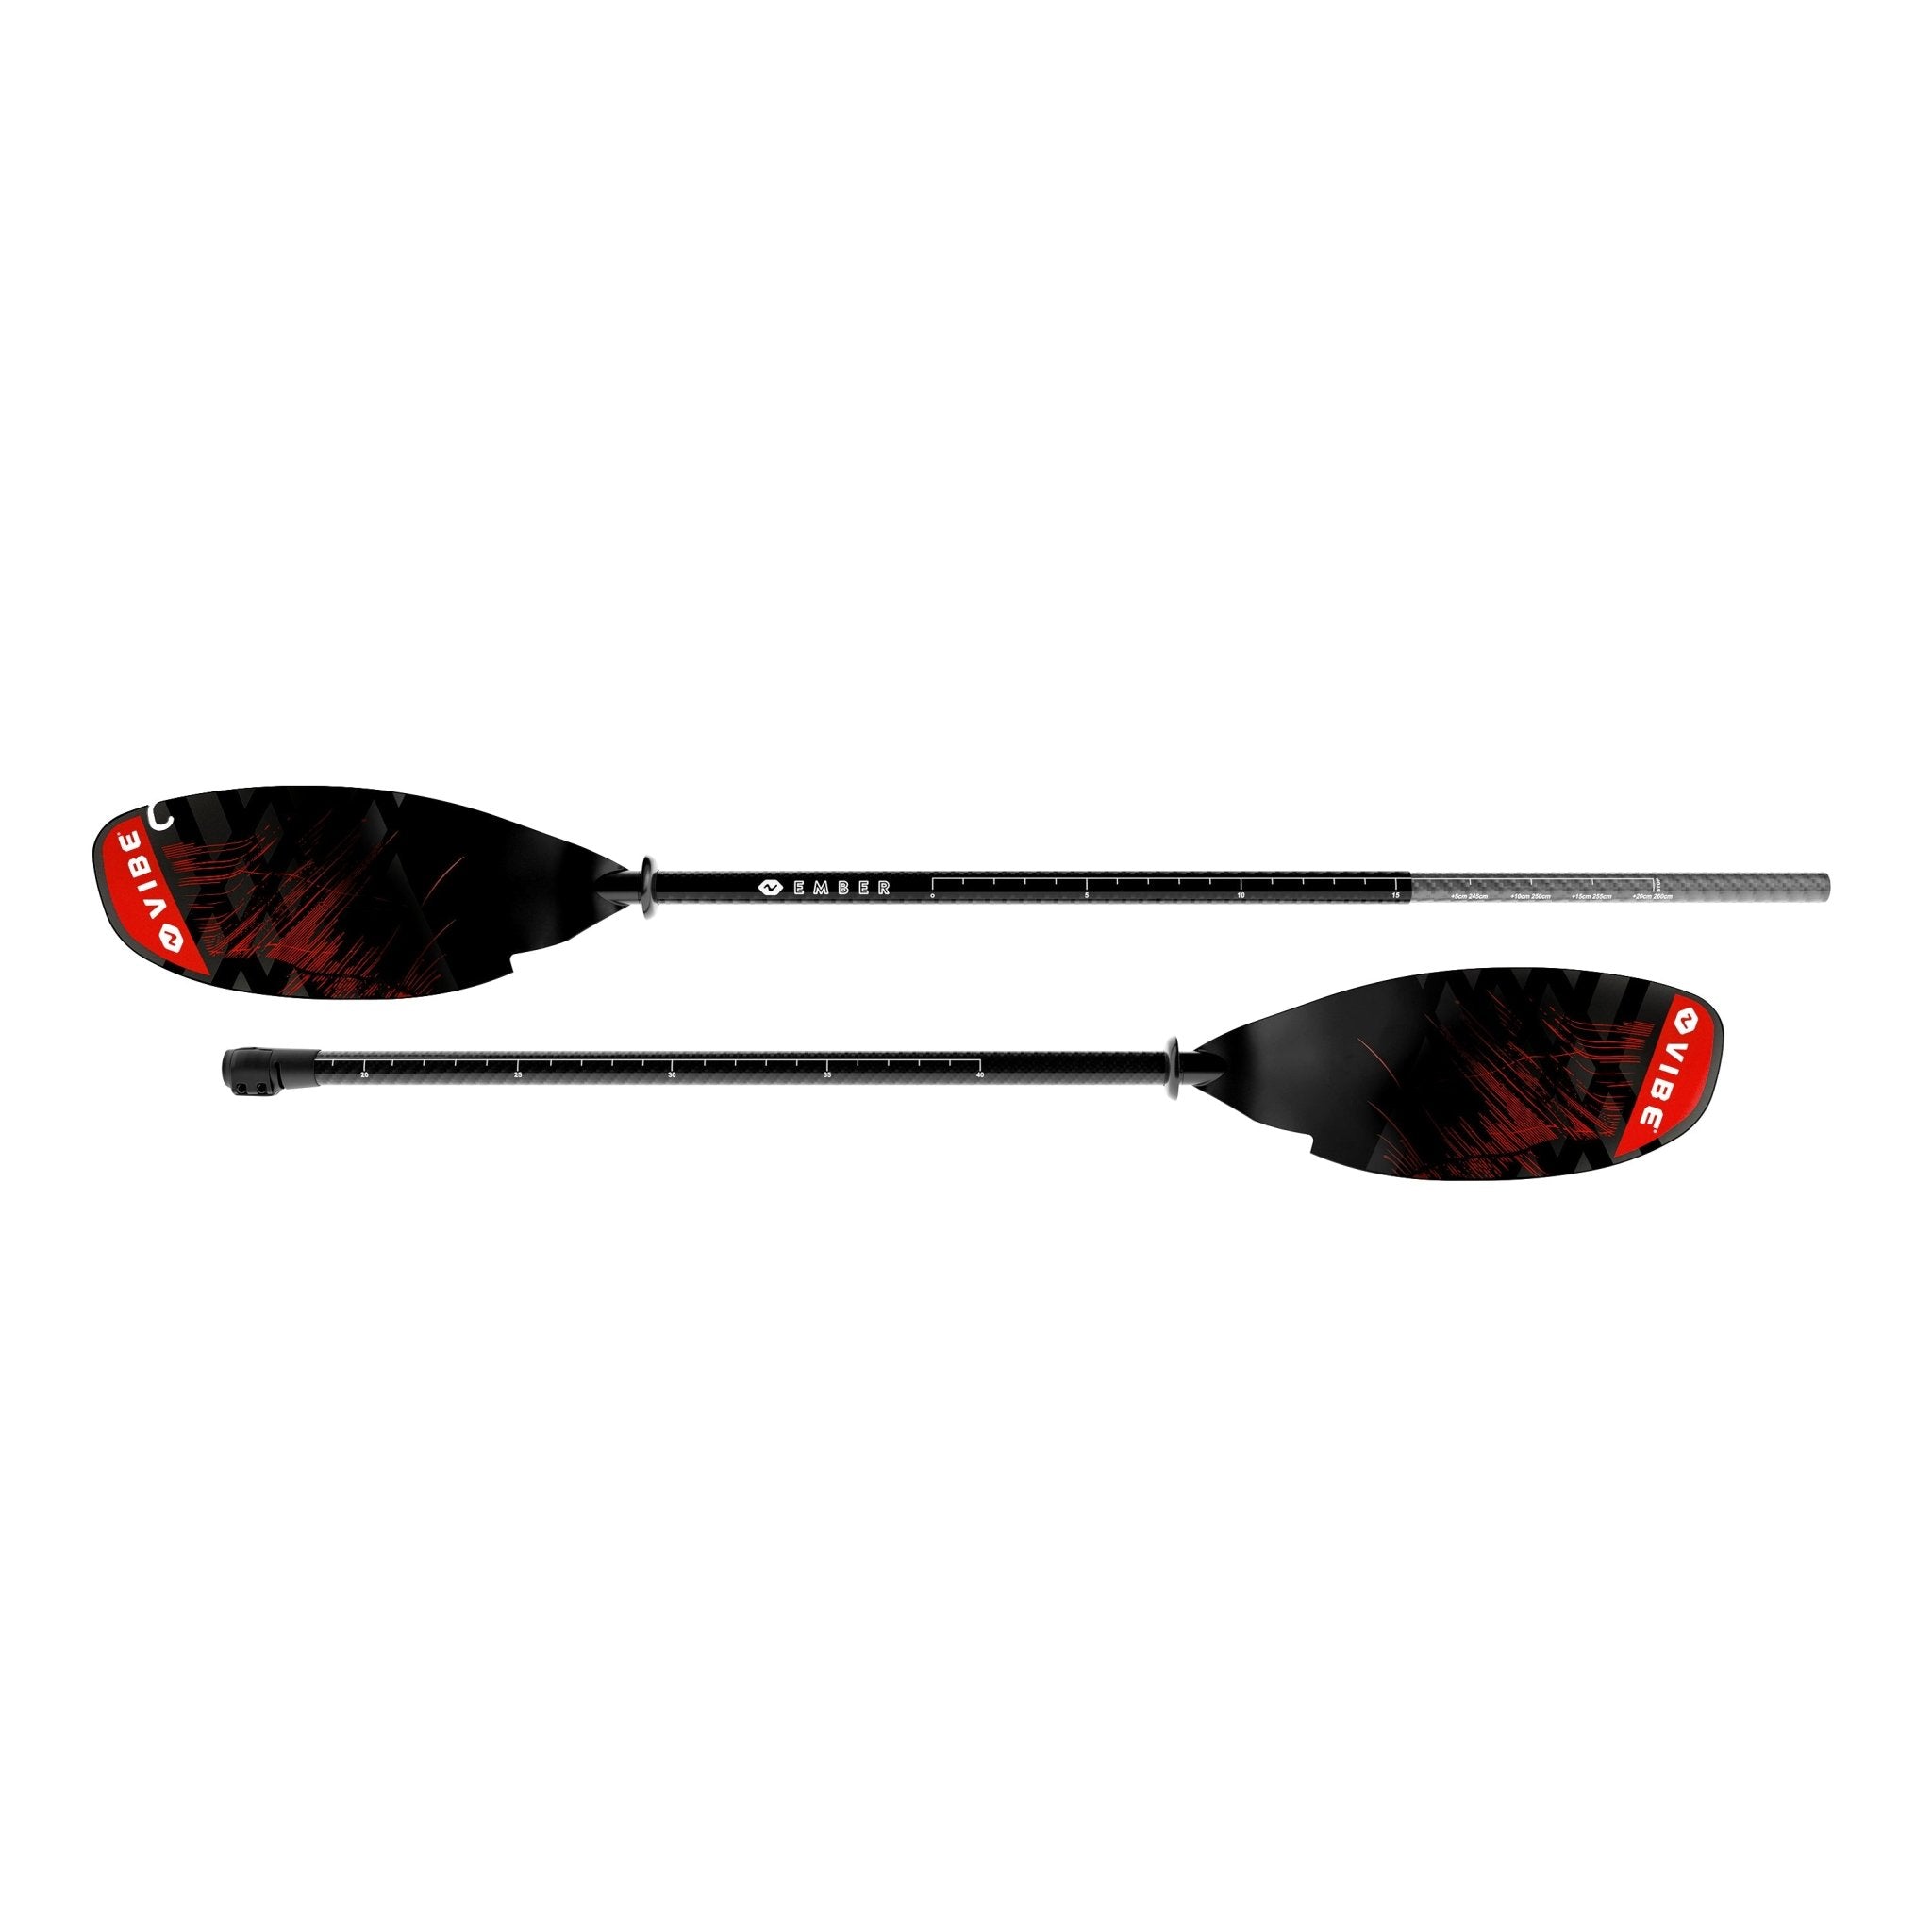 Pagaie Ember en fibre de carbone (240-260cm réglable) - Vibe Kayaks